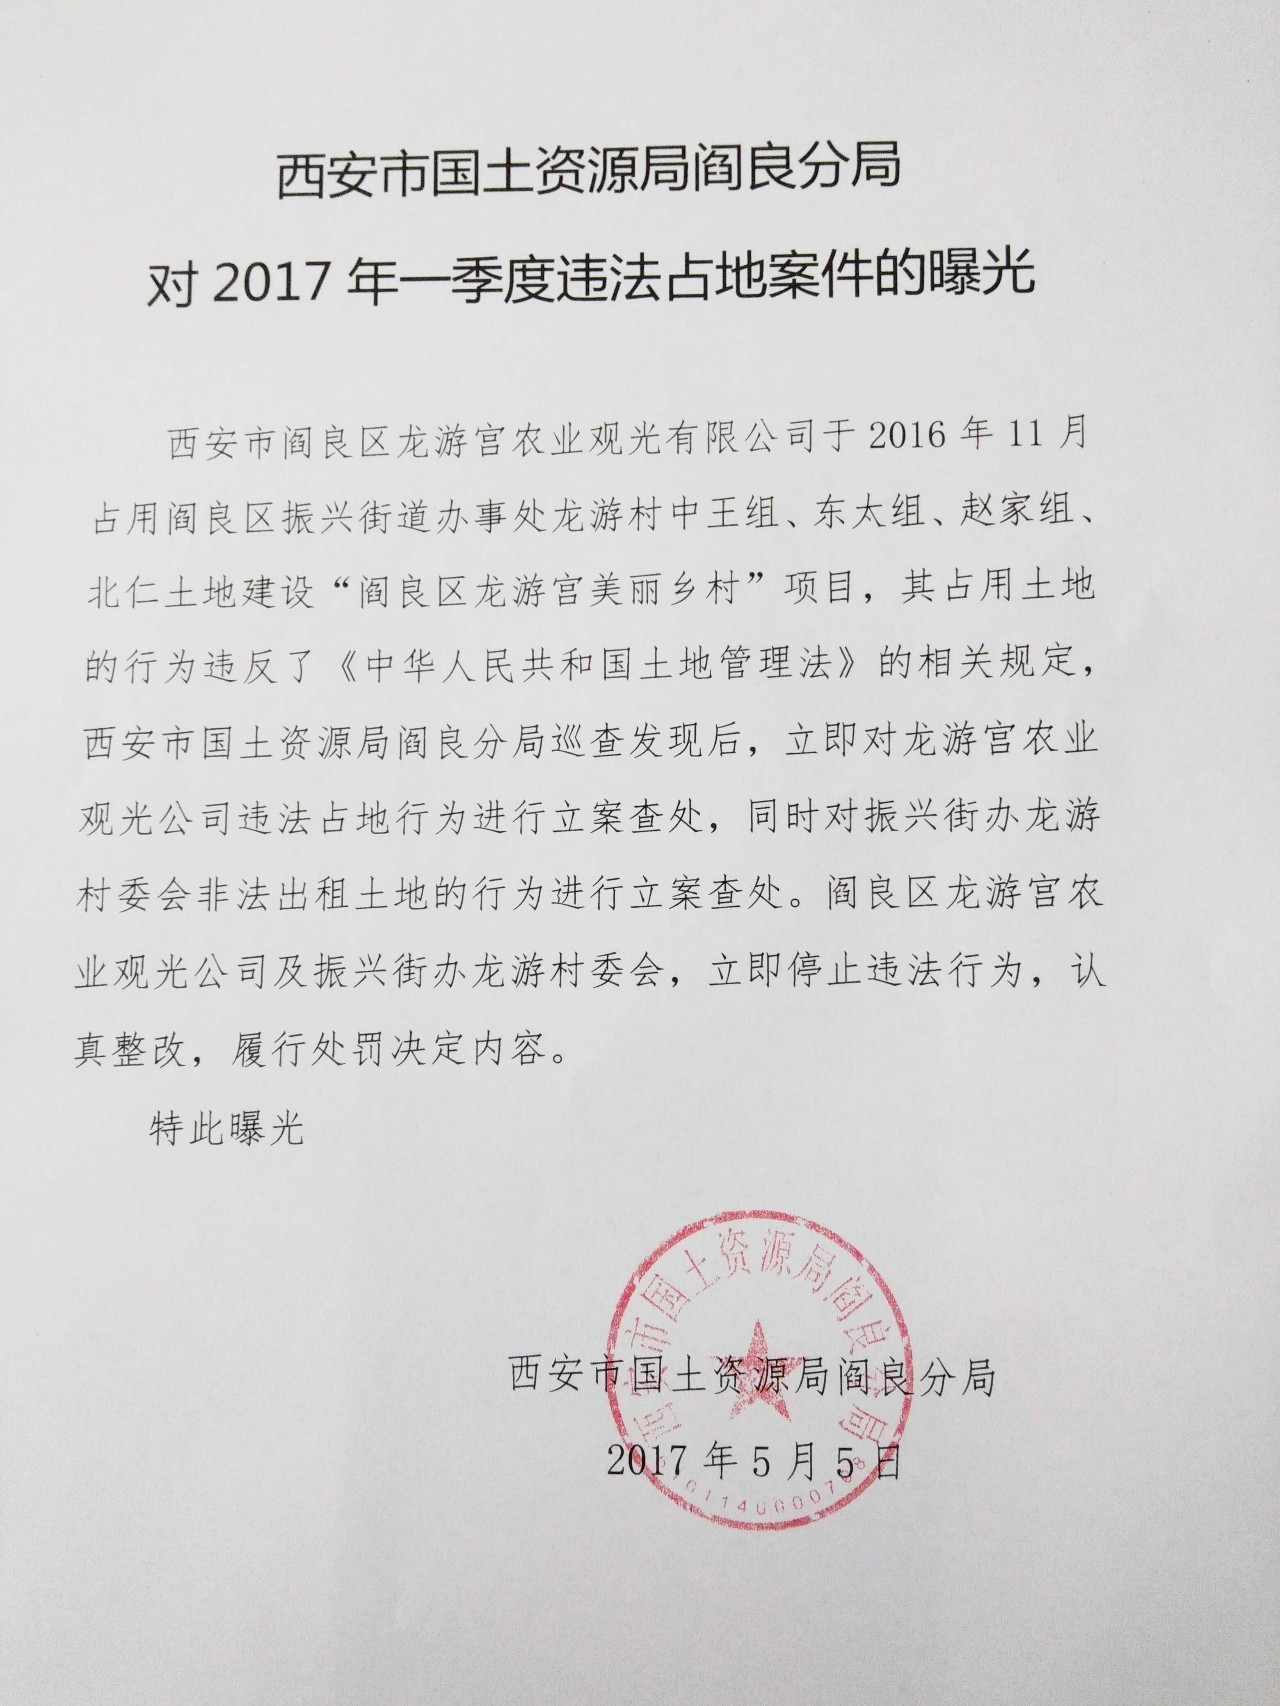 曝光!阎良龙游宫农业观光公司非法占用土地被立案查处